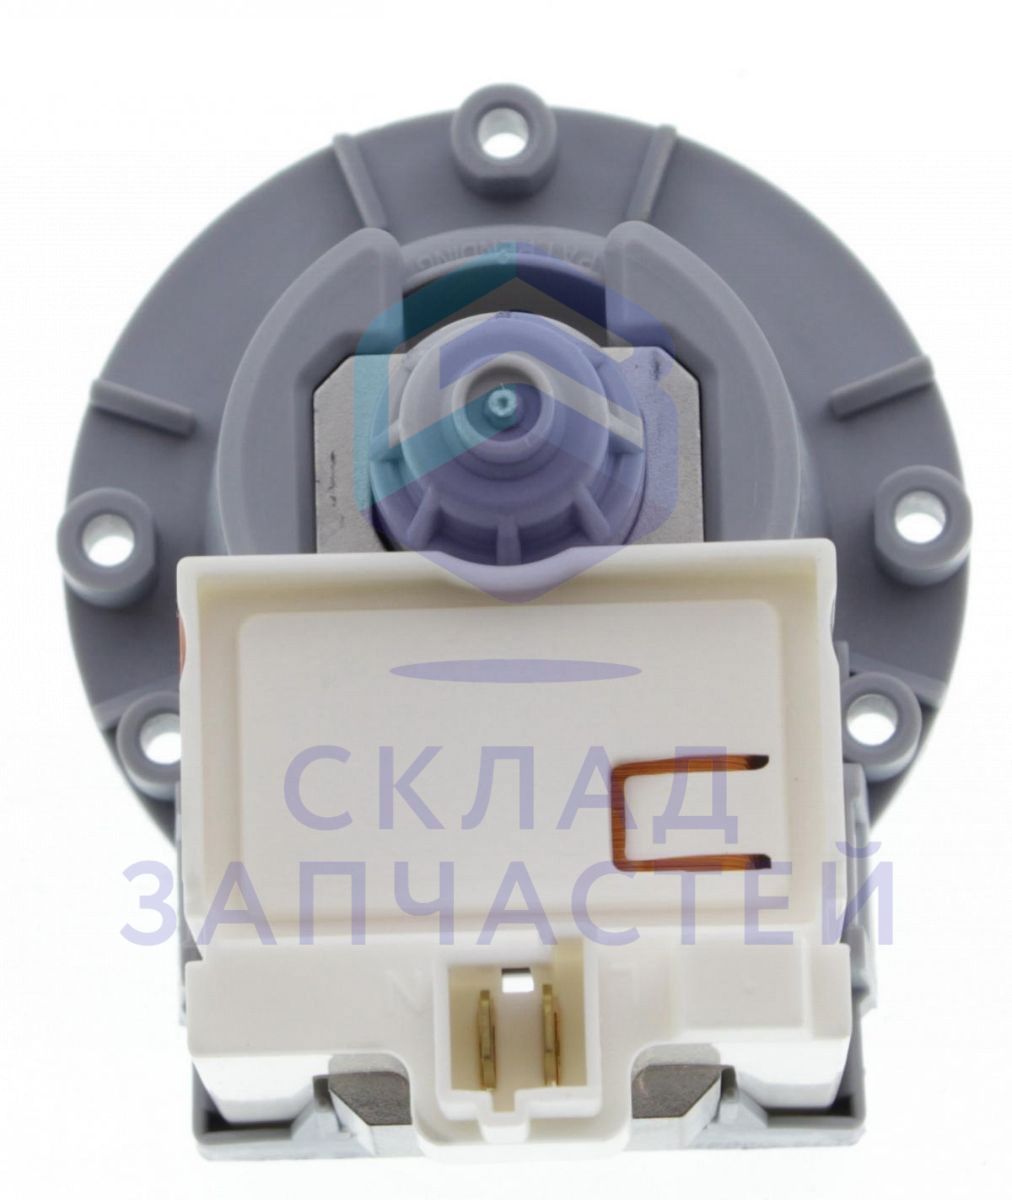 481236018529 Whirlpool аналог (Askoll), насос сливной (помпа) без улитки 34 вт для стиральной машины